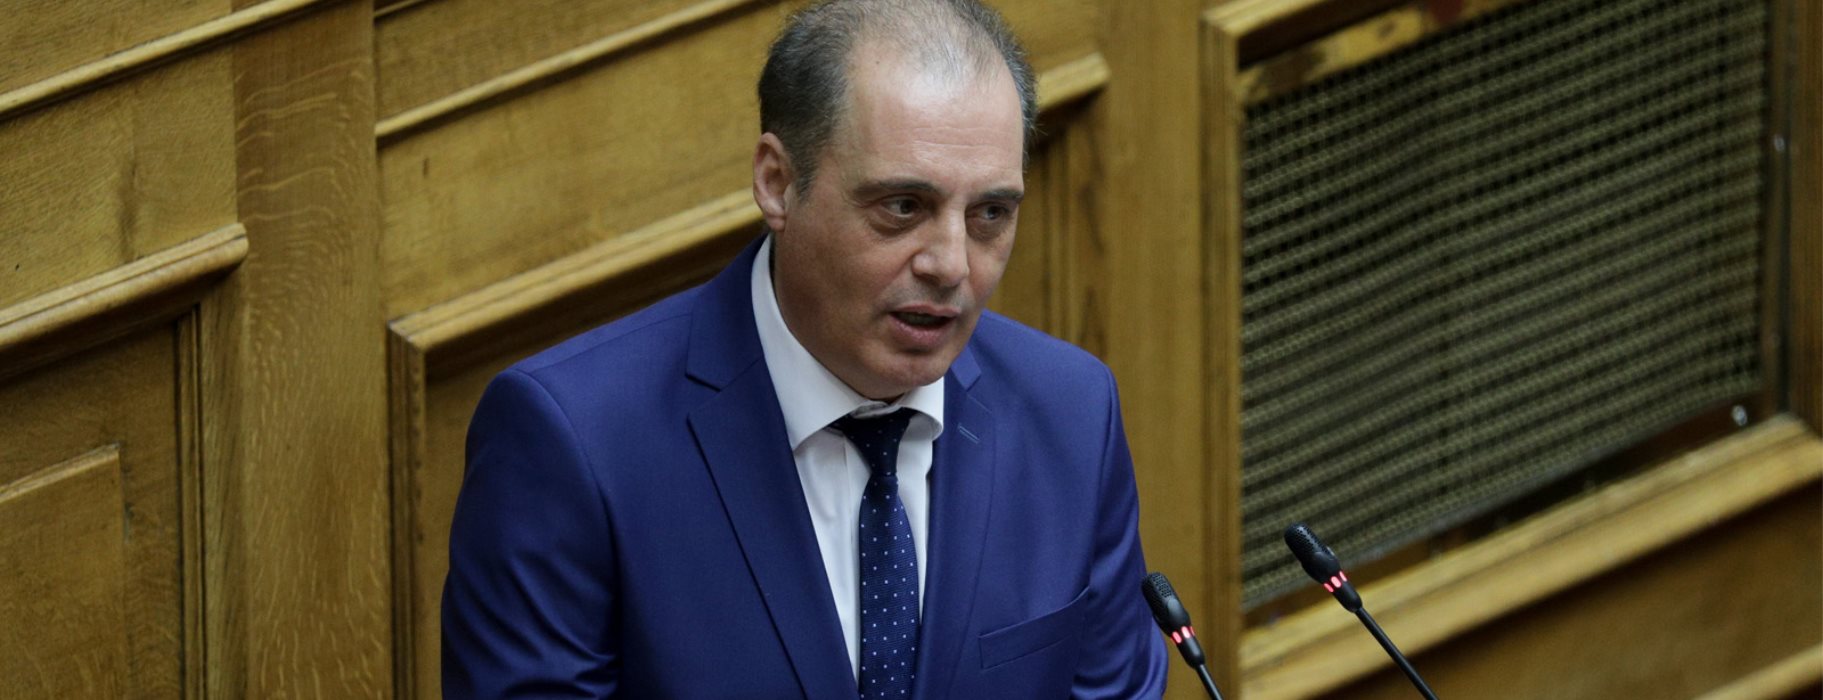 Κ. Βελόπουλος: «Συμβιβαστική η συμφωνία για την ΑΟΖ – Αφήνει απέξω Διαπόντια νησιά και Στροφάδες»